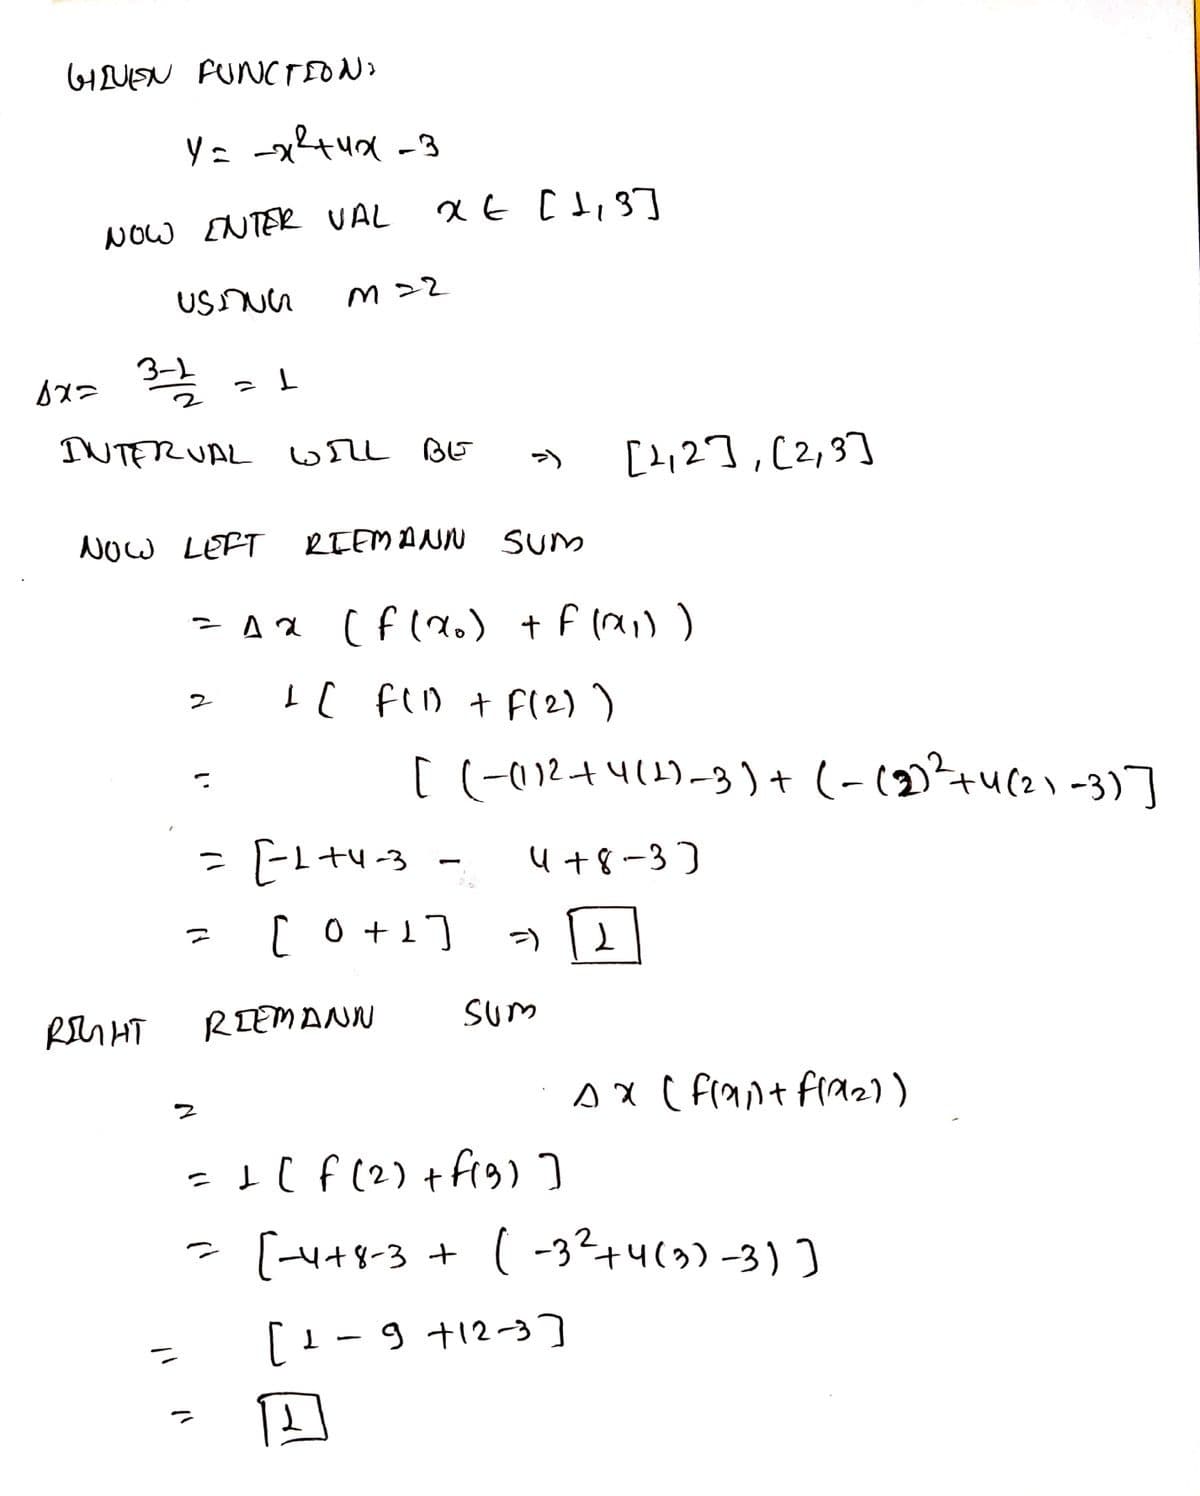 HUISN FUNCTEON
NOw ENTER VAL
てて W
INTERUAL wrL BE
[2,2],[2,3]
NOW LEFT
RTEMANN SUm
I[ fiD + F(2) )
[ (-012+4(1)-3)+ (-(2)²+u(2) -3)]
u+8-3)
[o+1]
RIEMANN
sum
Ax ( F(ant fraz))
- I( f (2) +frg ]
- [H+8-3 + ( -3?+4(3)-3)]
[1-9 +12-3
9 t12-3]
